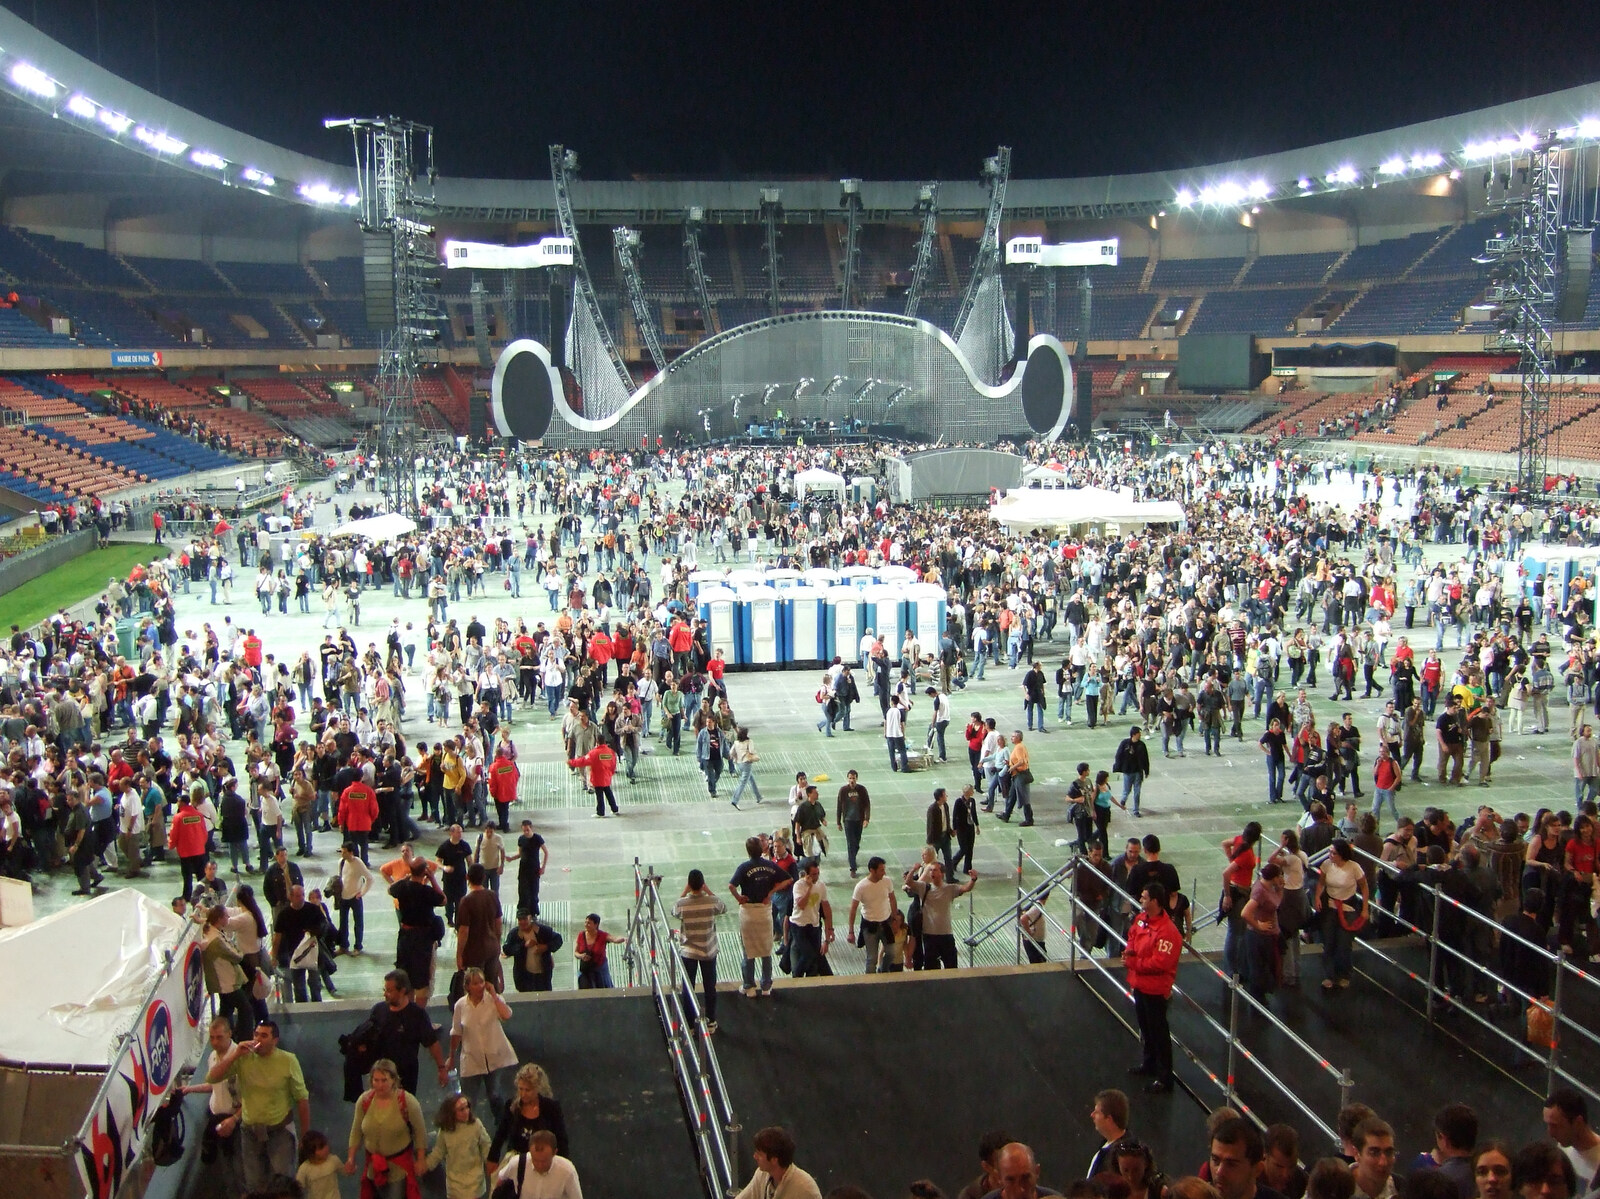 Genesis Live at Parc Des Princes, Paris, France - 30th June 2007: The Parc Des Princes stadium empties